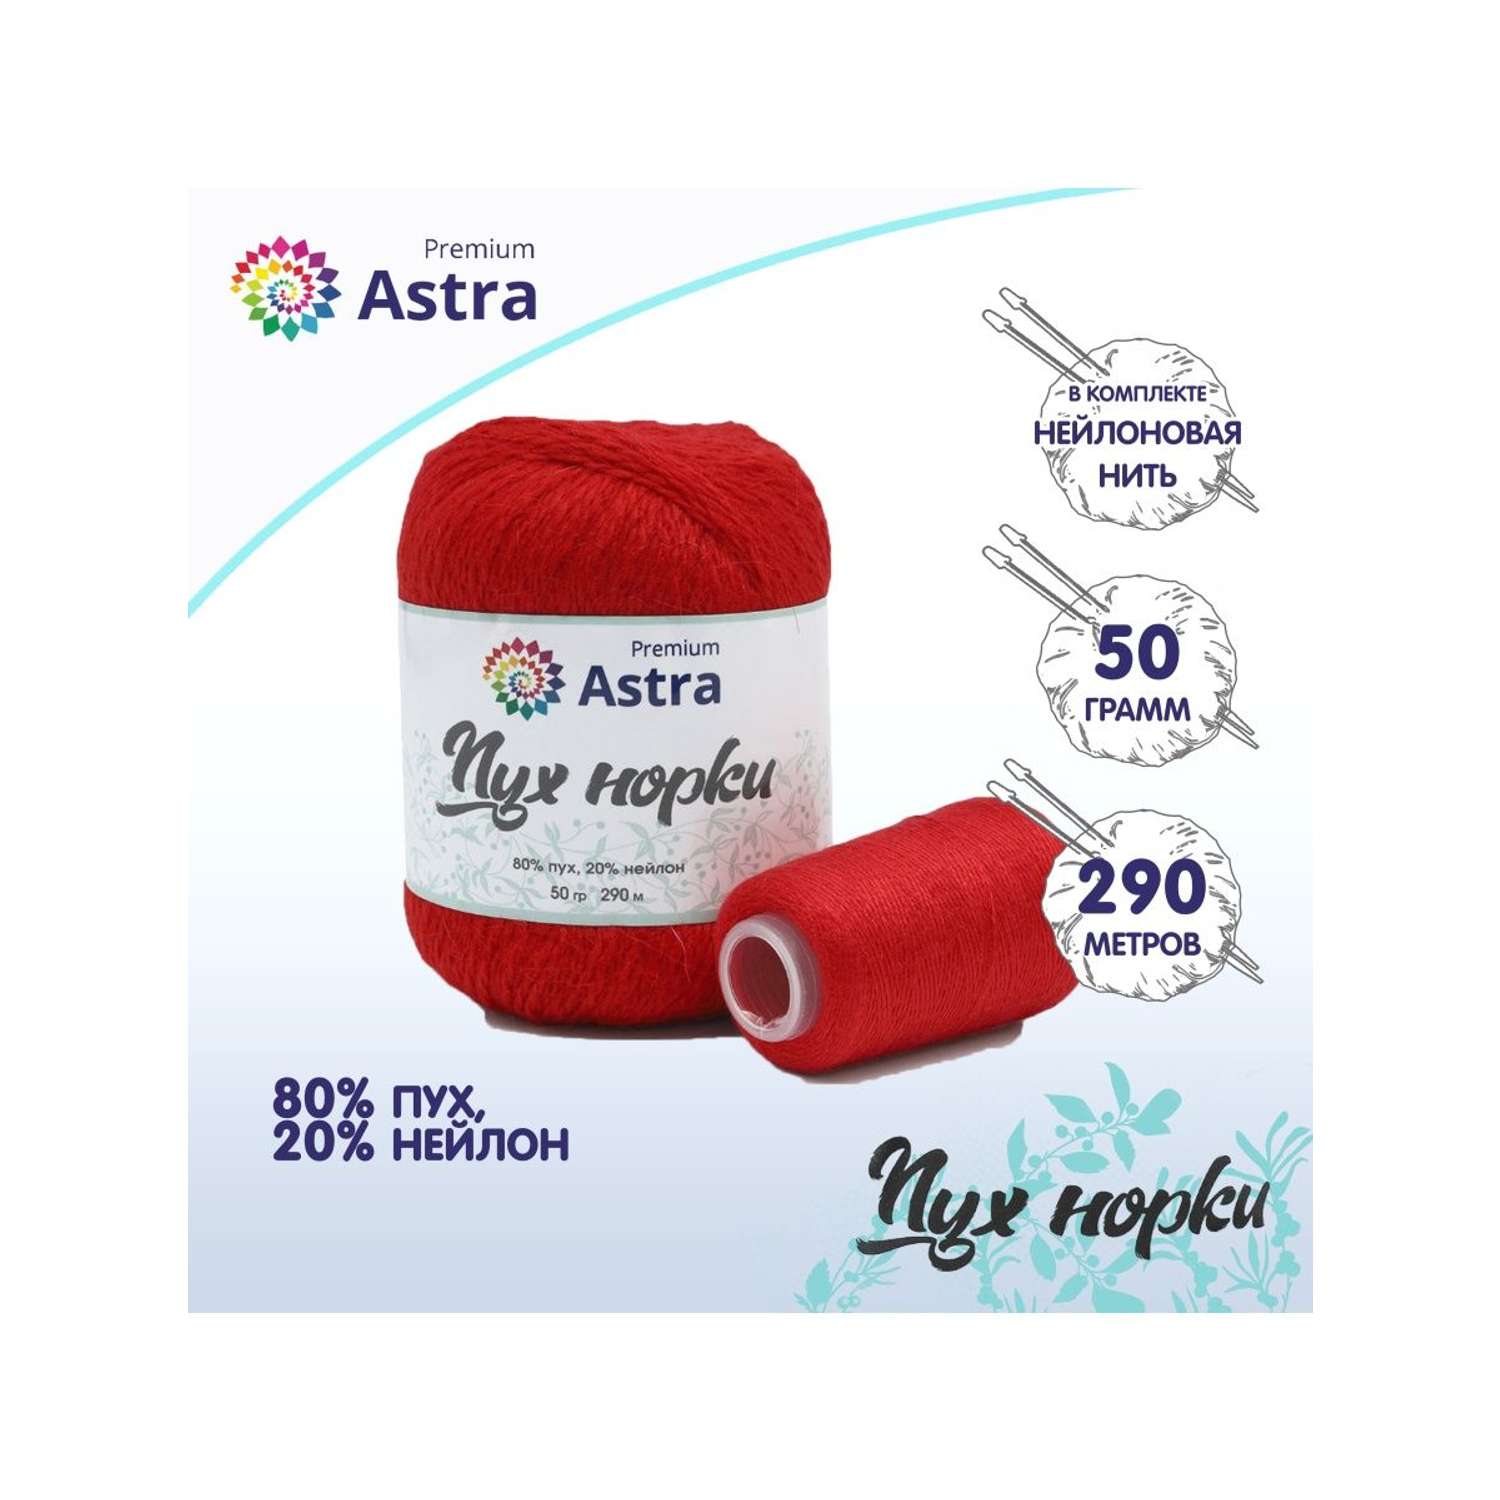 Пряжа Astra Premium Пух норки Mink yarn воздушная с ворсом 50 г 290 м 010 ярко-красный 1 моток - фото 1